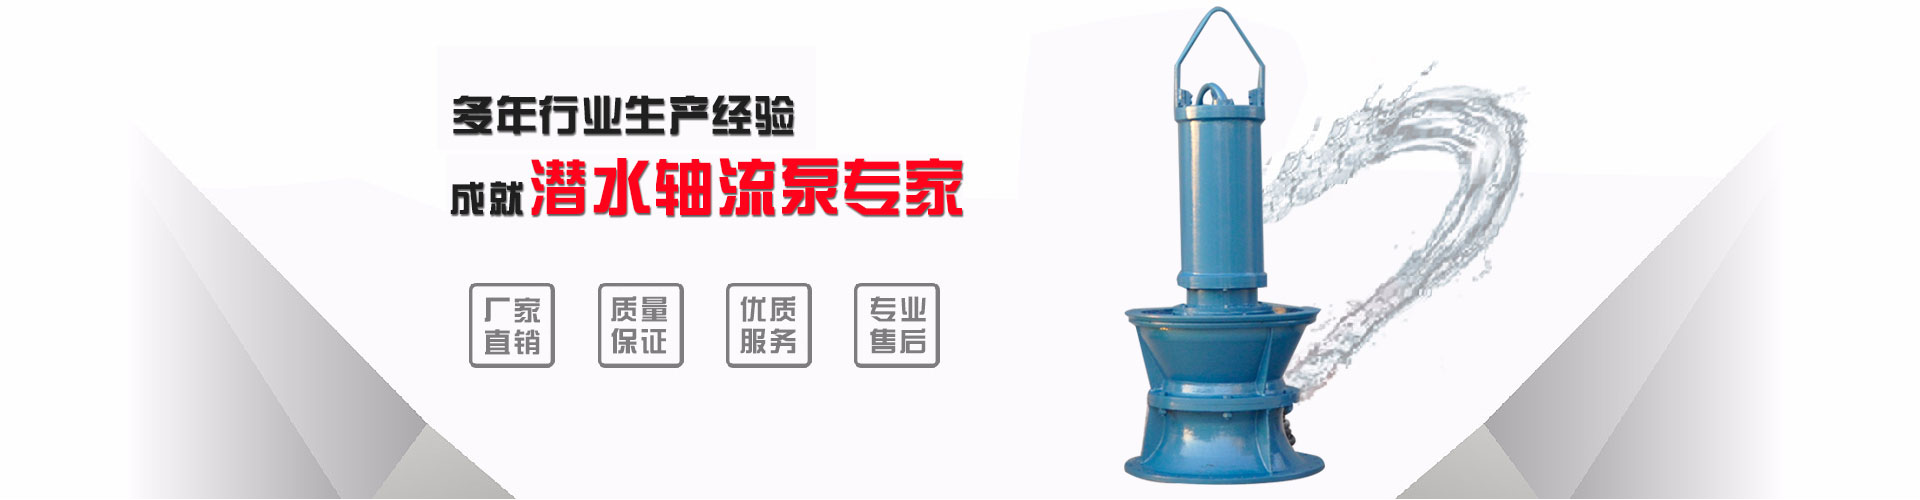 重庆700QH-50井筒式潜水轴流泵